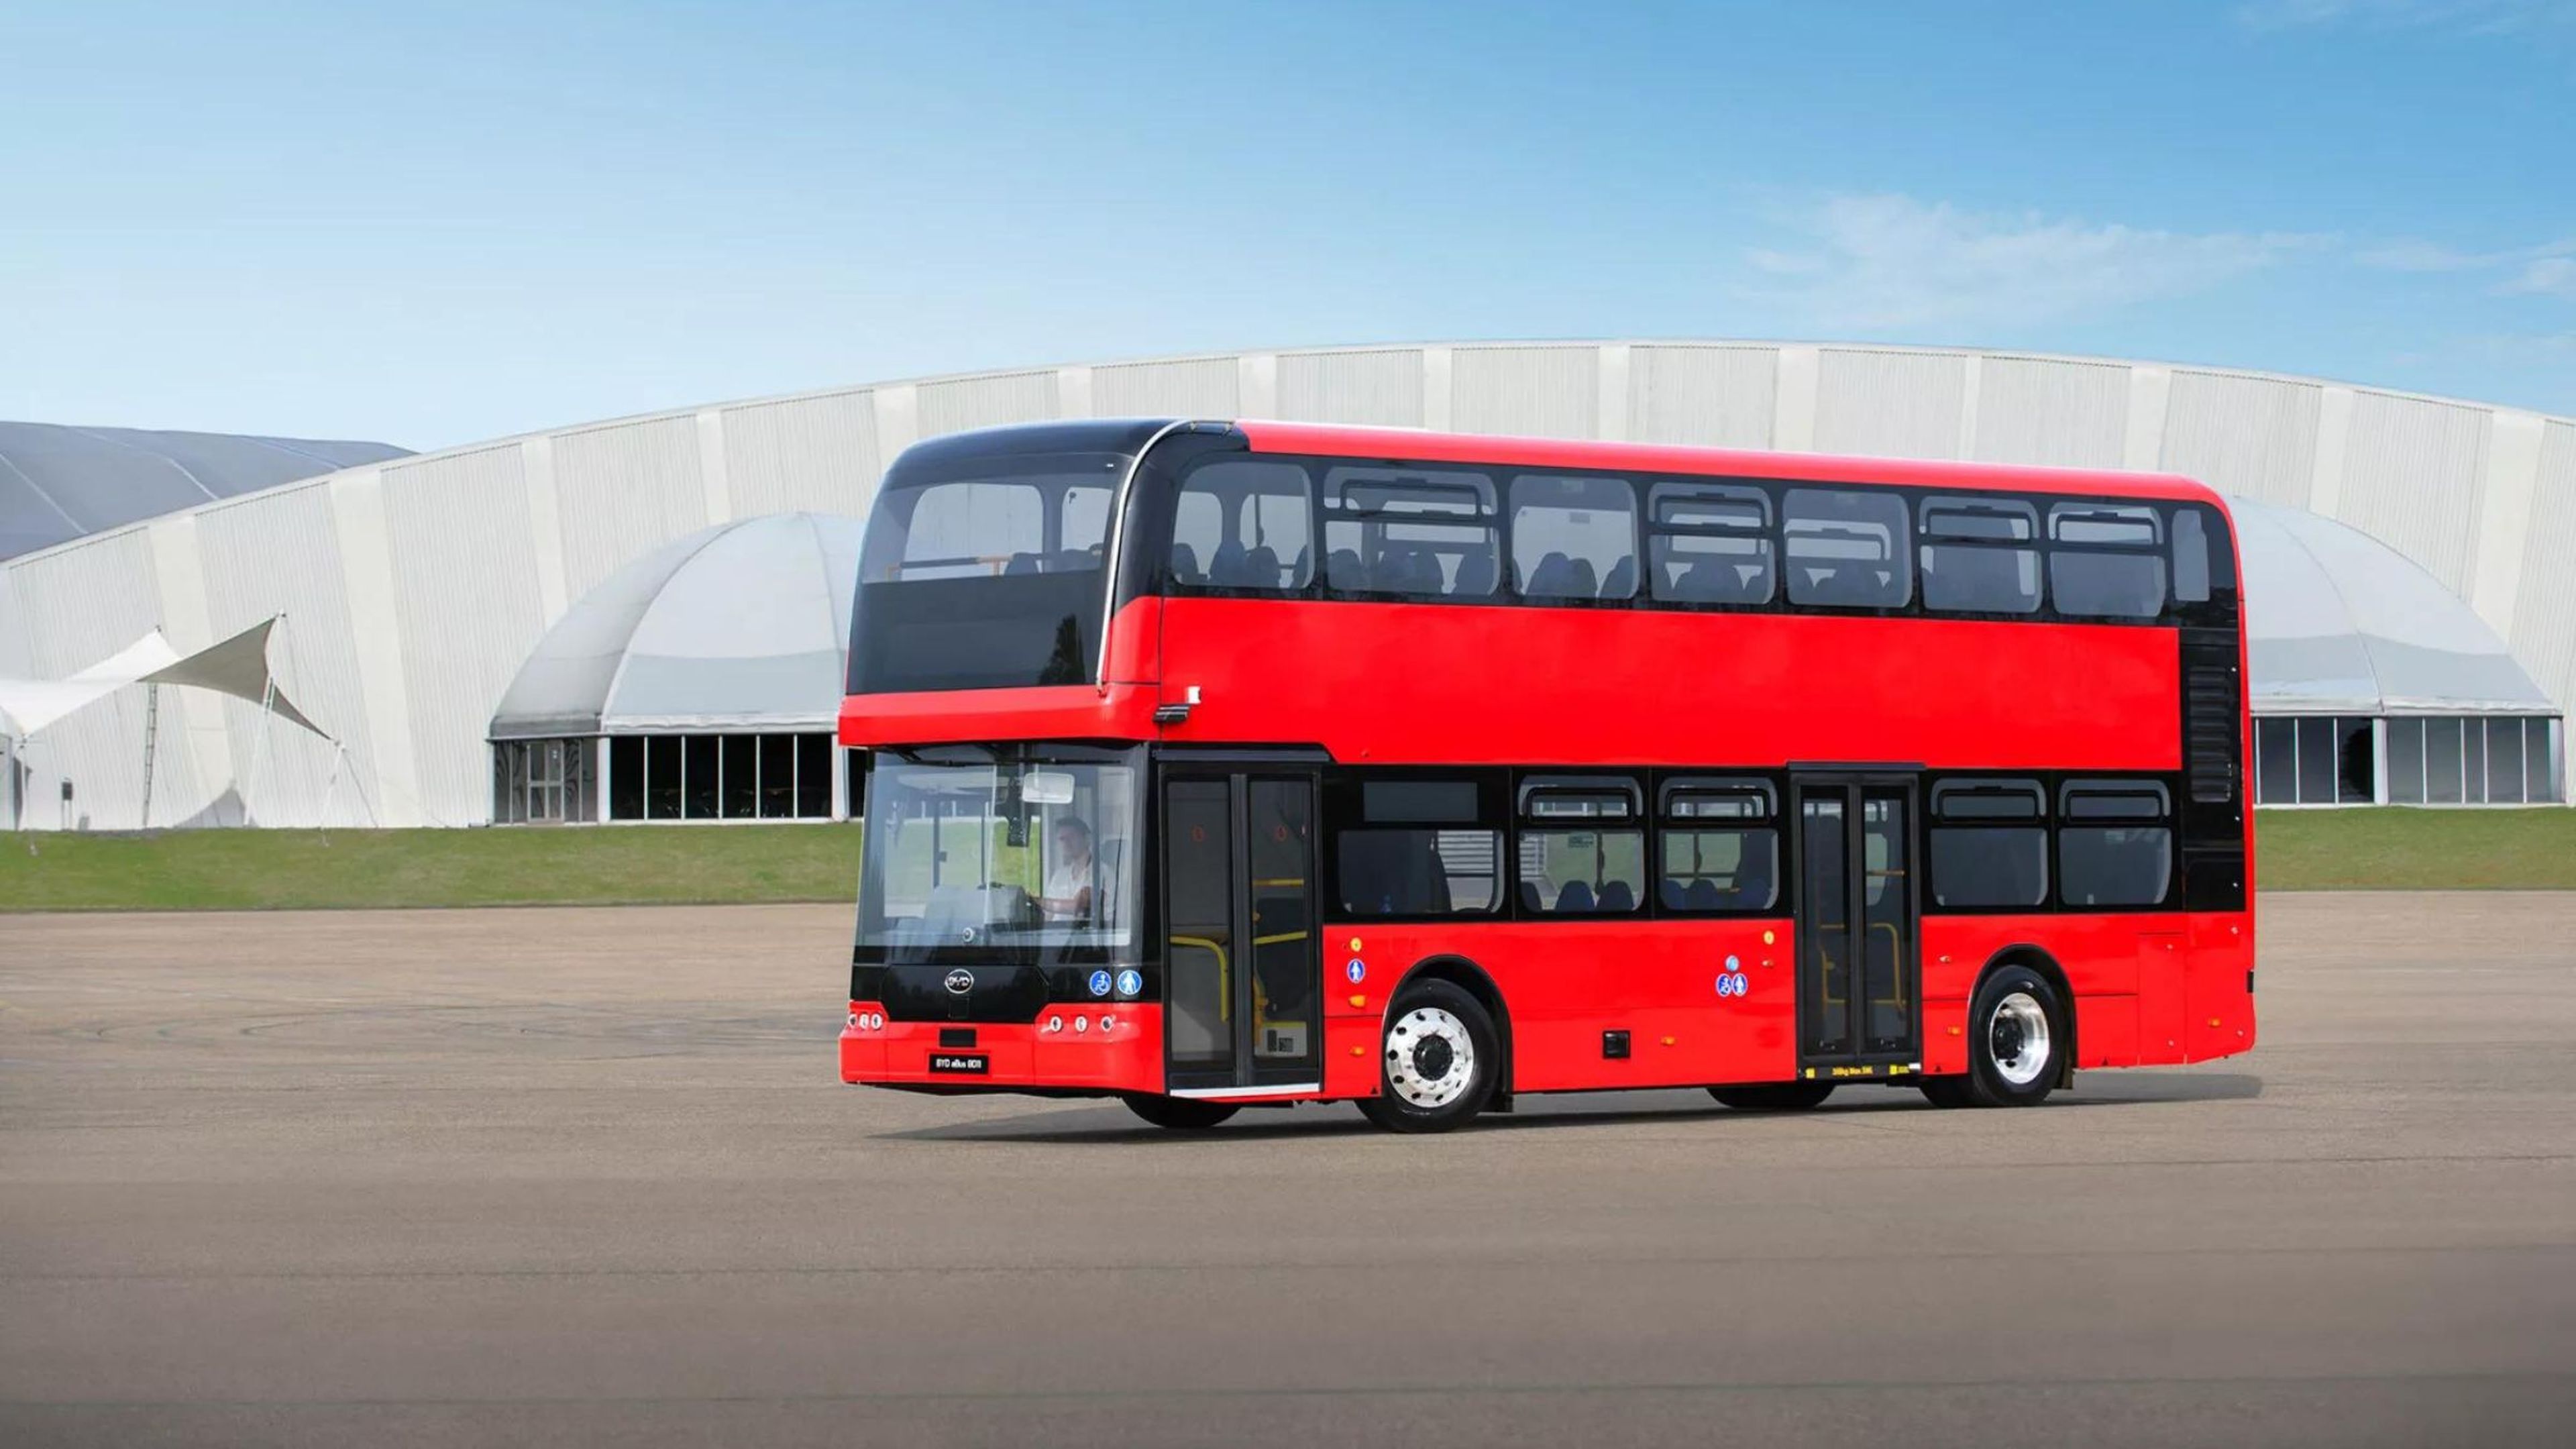 Hasta Londres ha sucumbido a las marcas chinas, y como muestra, este autobús de dos pisos eléctrico de BYD